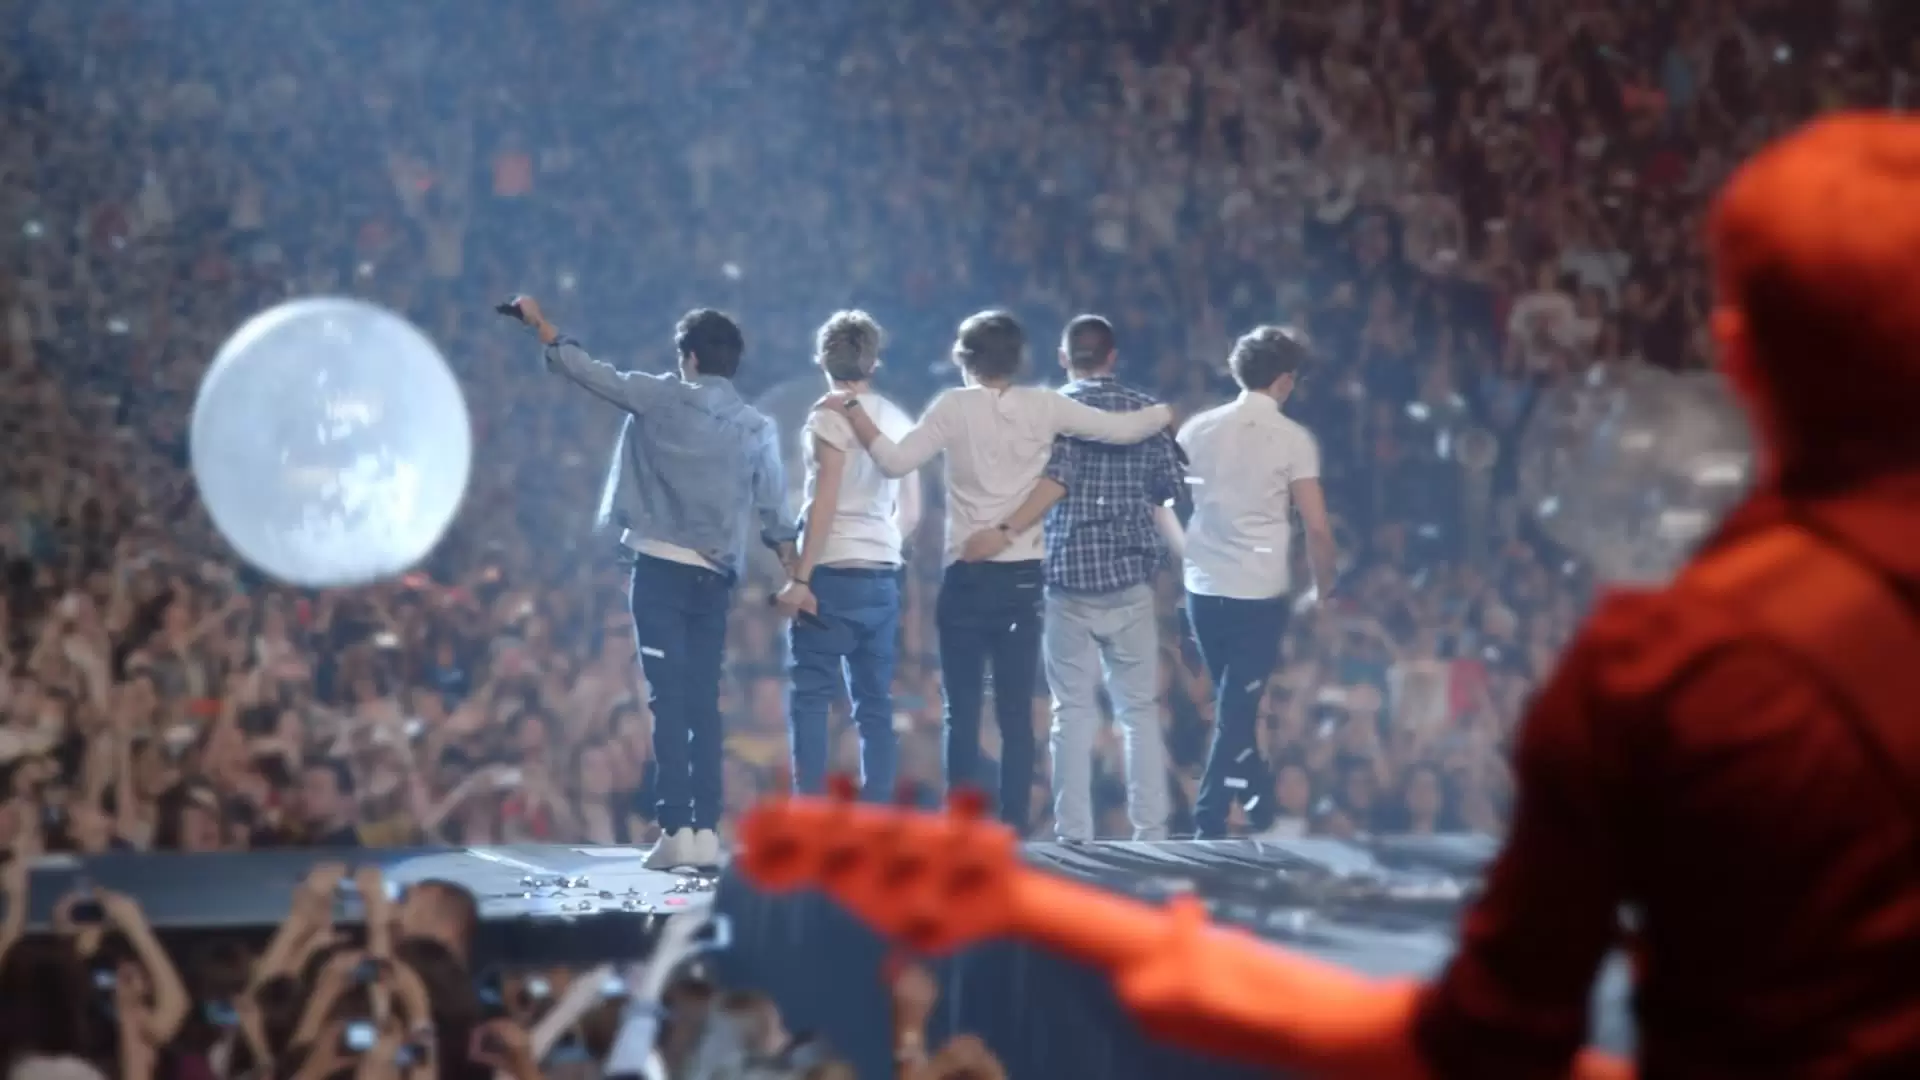 دانلود مستند One Direction: This Is Us 2013 (وان دایرکشن: این ما هستیم) با زیرنویس فارسی